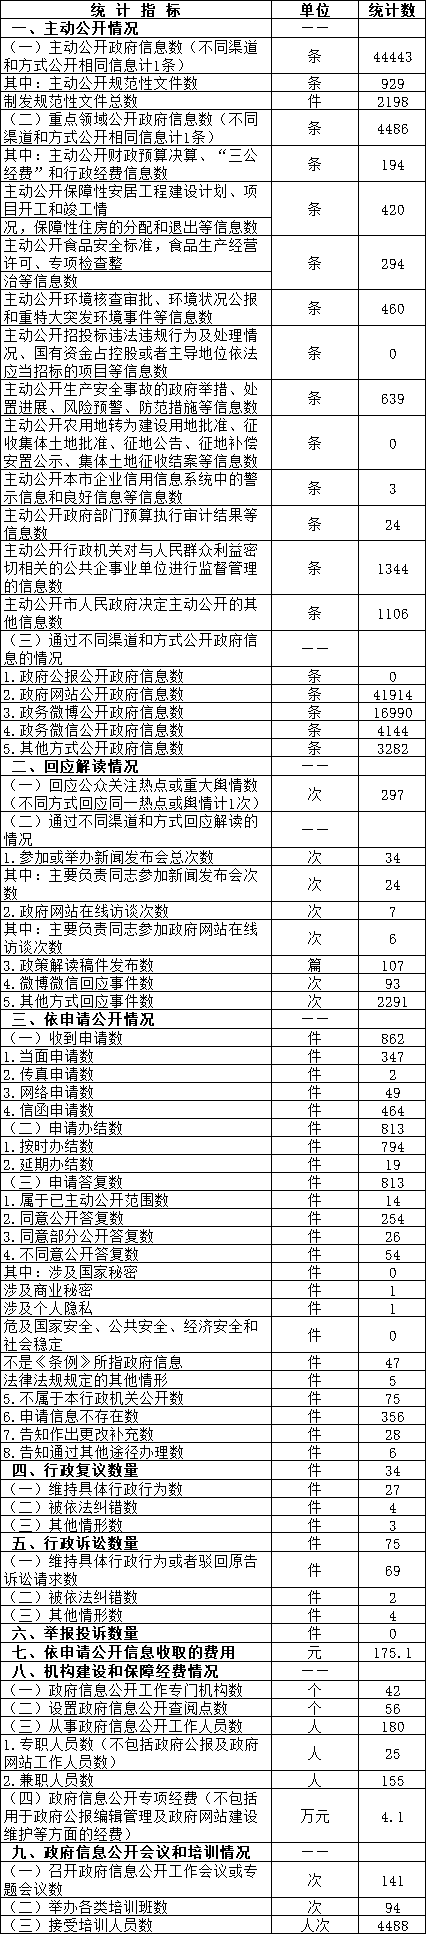 北京市豐台區人民政府信息公開情況統計表(2016年度)